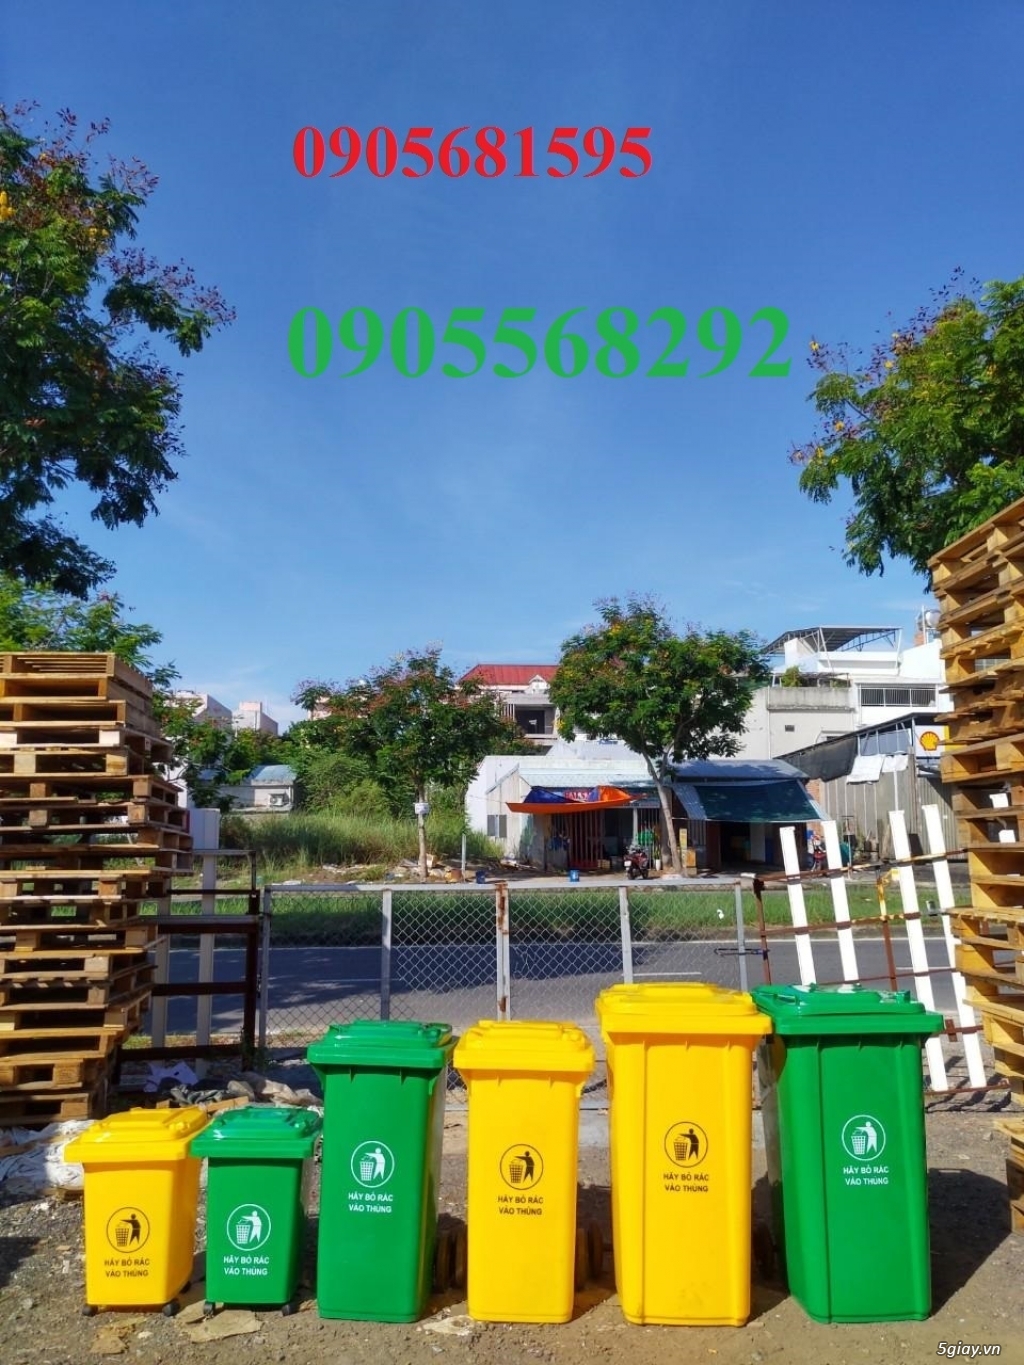 cung cấp thùng rác lớn nhất miền trung 0905568292-0905681595 - 3